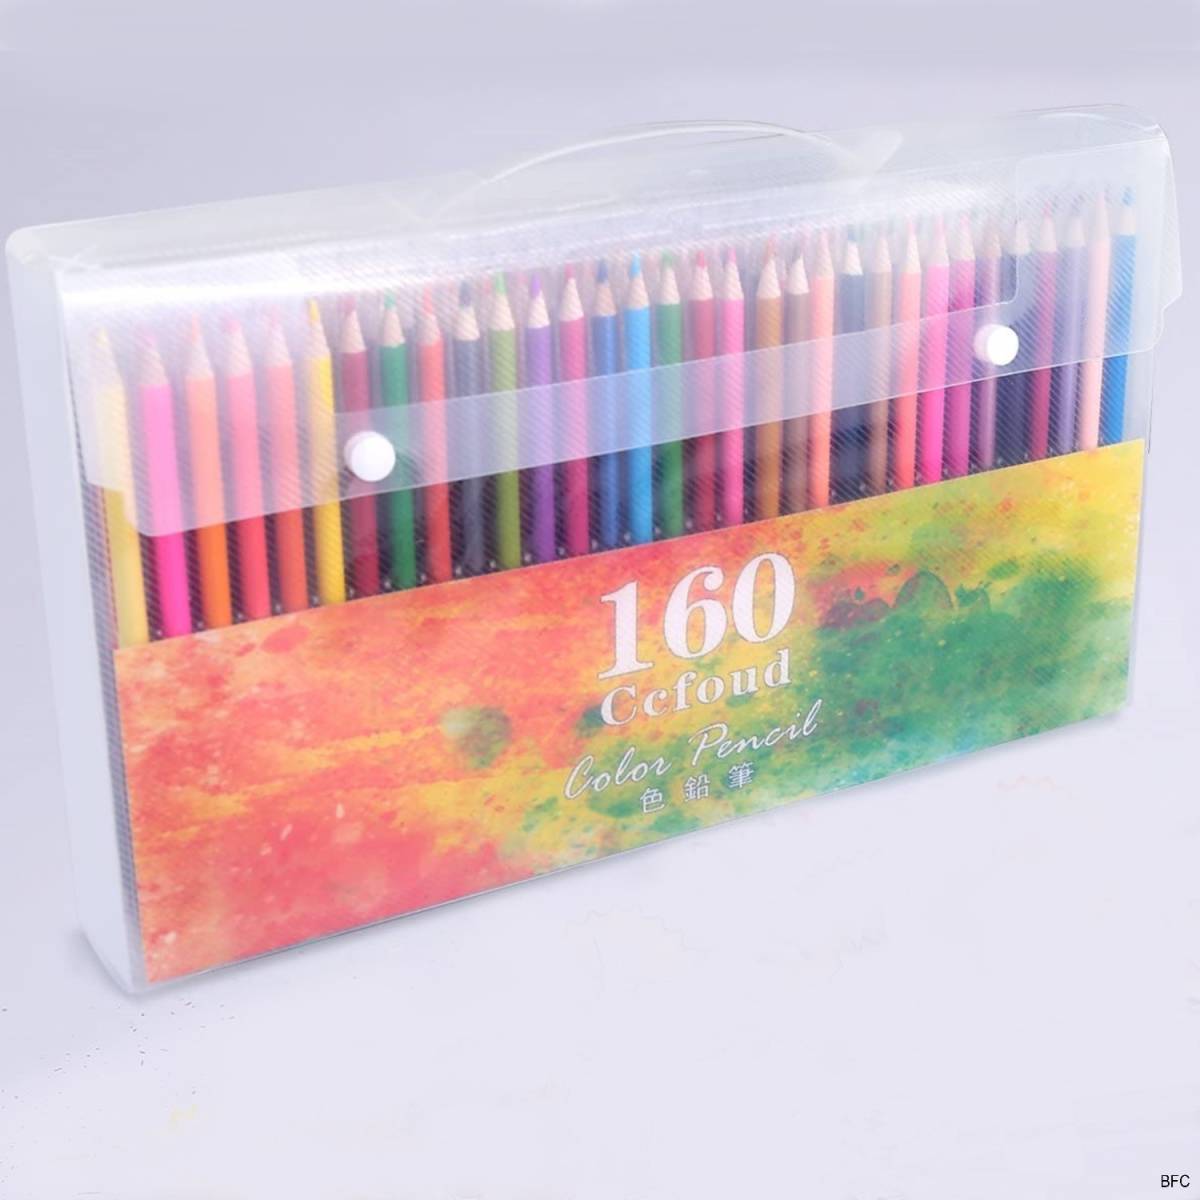 160色セット 色鉛筆 カラーペンセット 塗り絵 持ち運び便利 送料無料